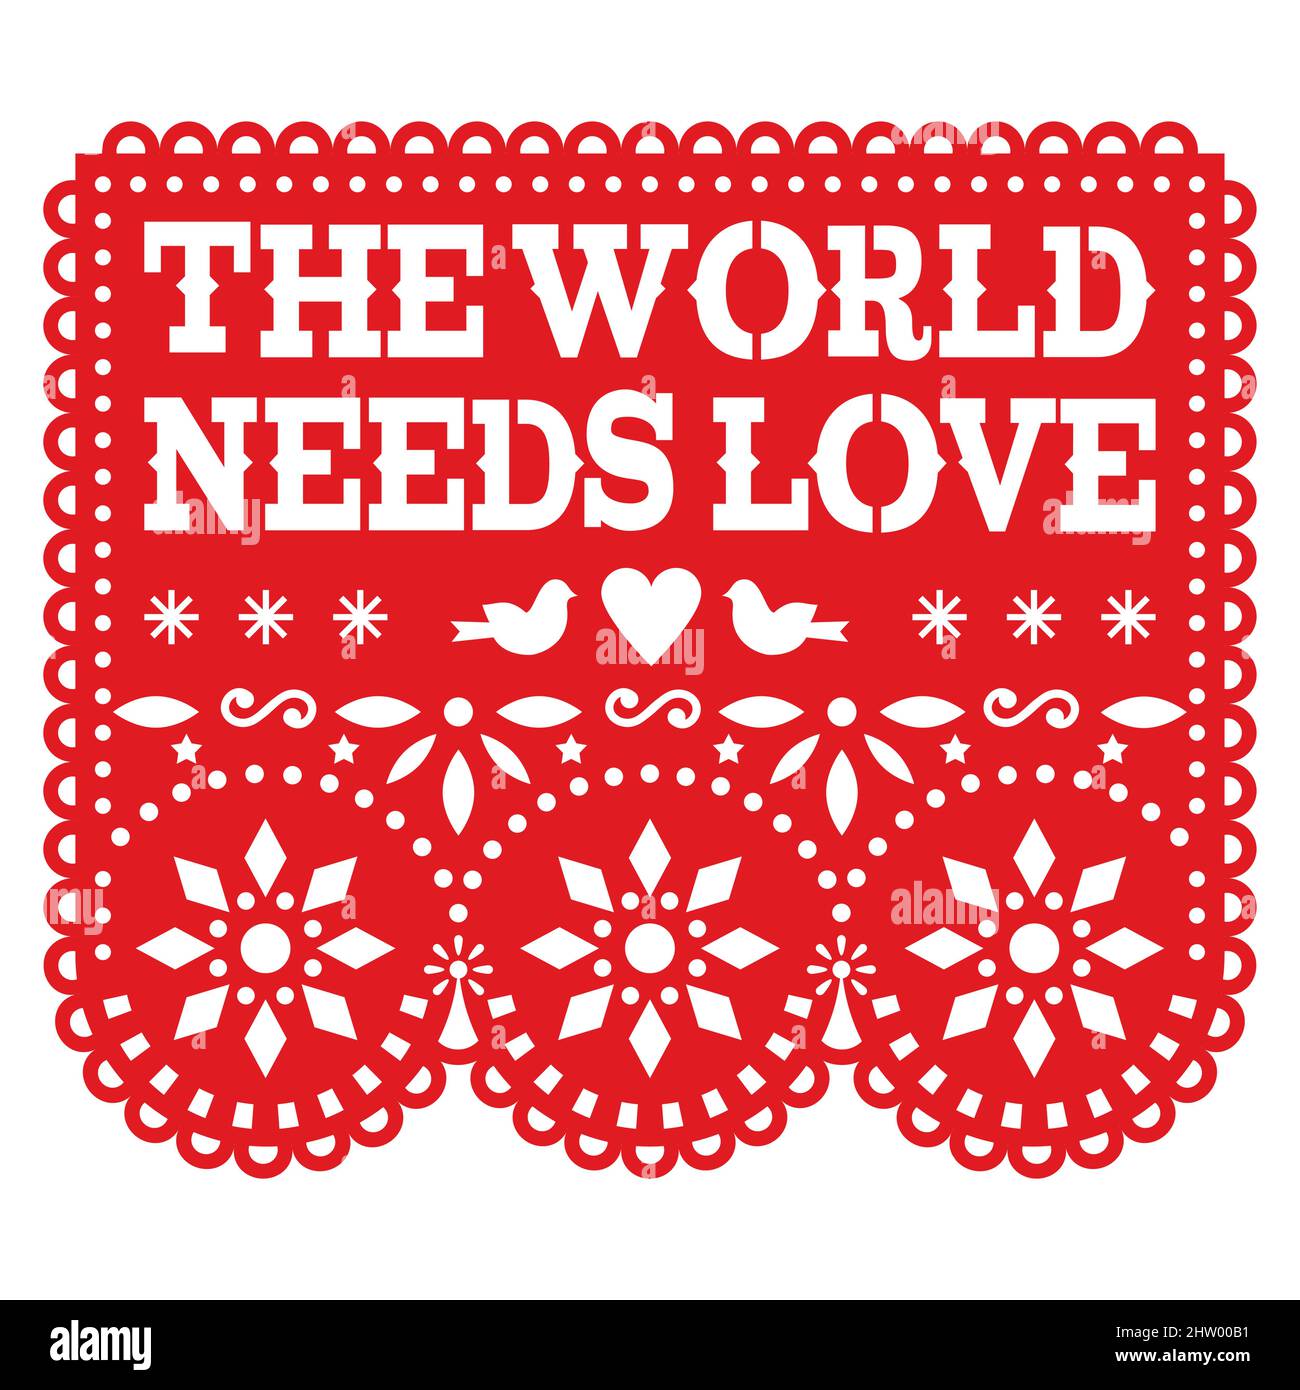 Die Welt braucht Liebe Papel Picado Vektor-Design in rot, mexikanische Papier Ausschnitt Dekoration mit Herz, Brid und Blumen Stock Vektor